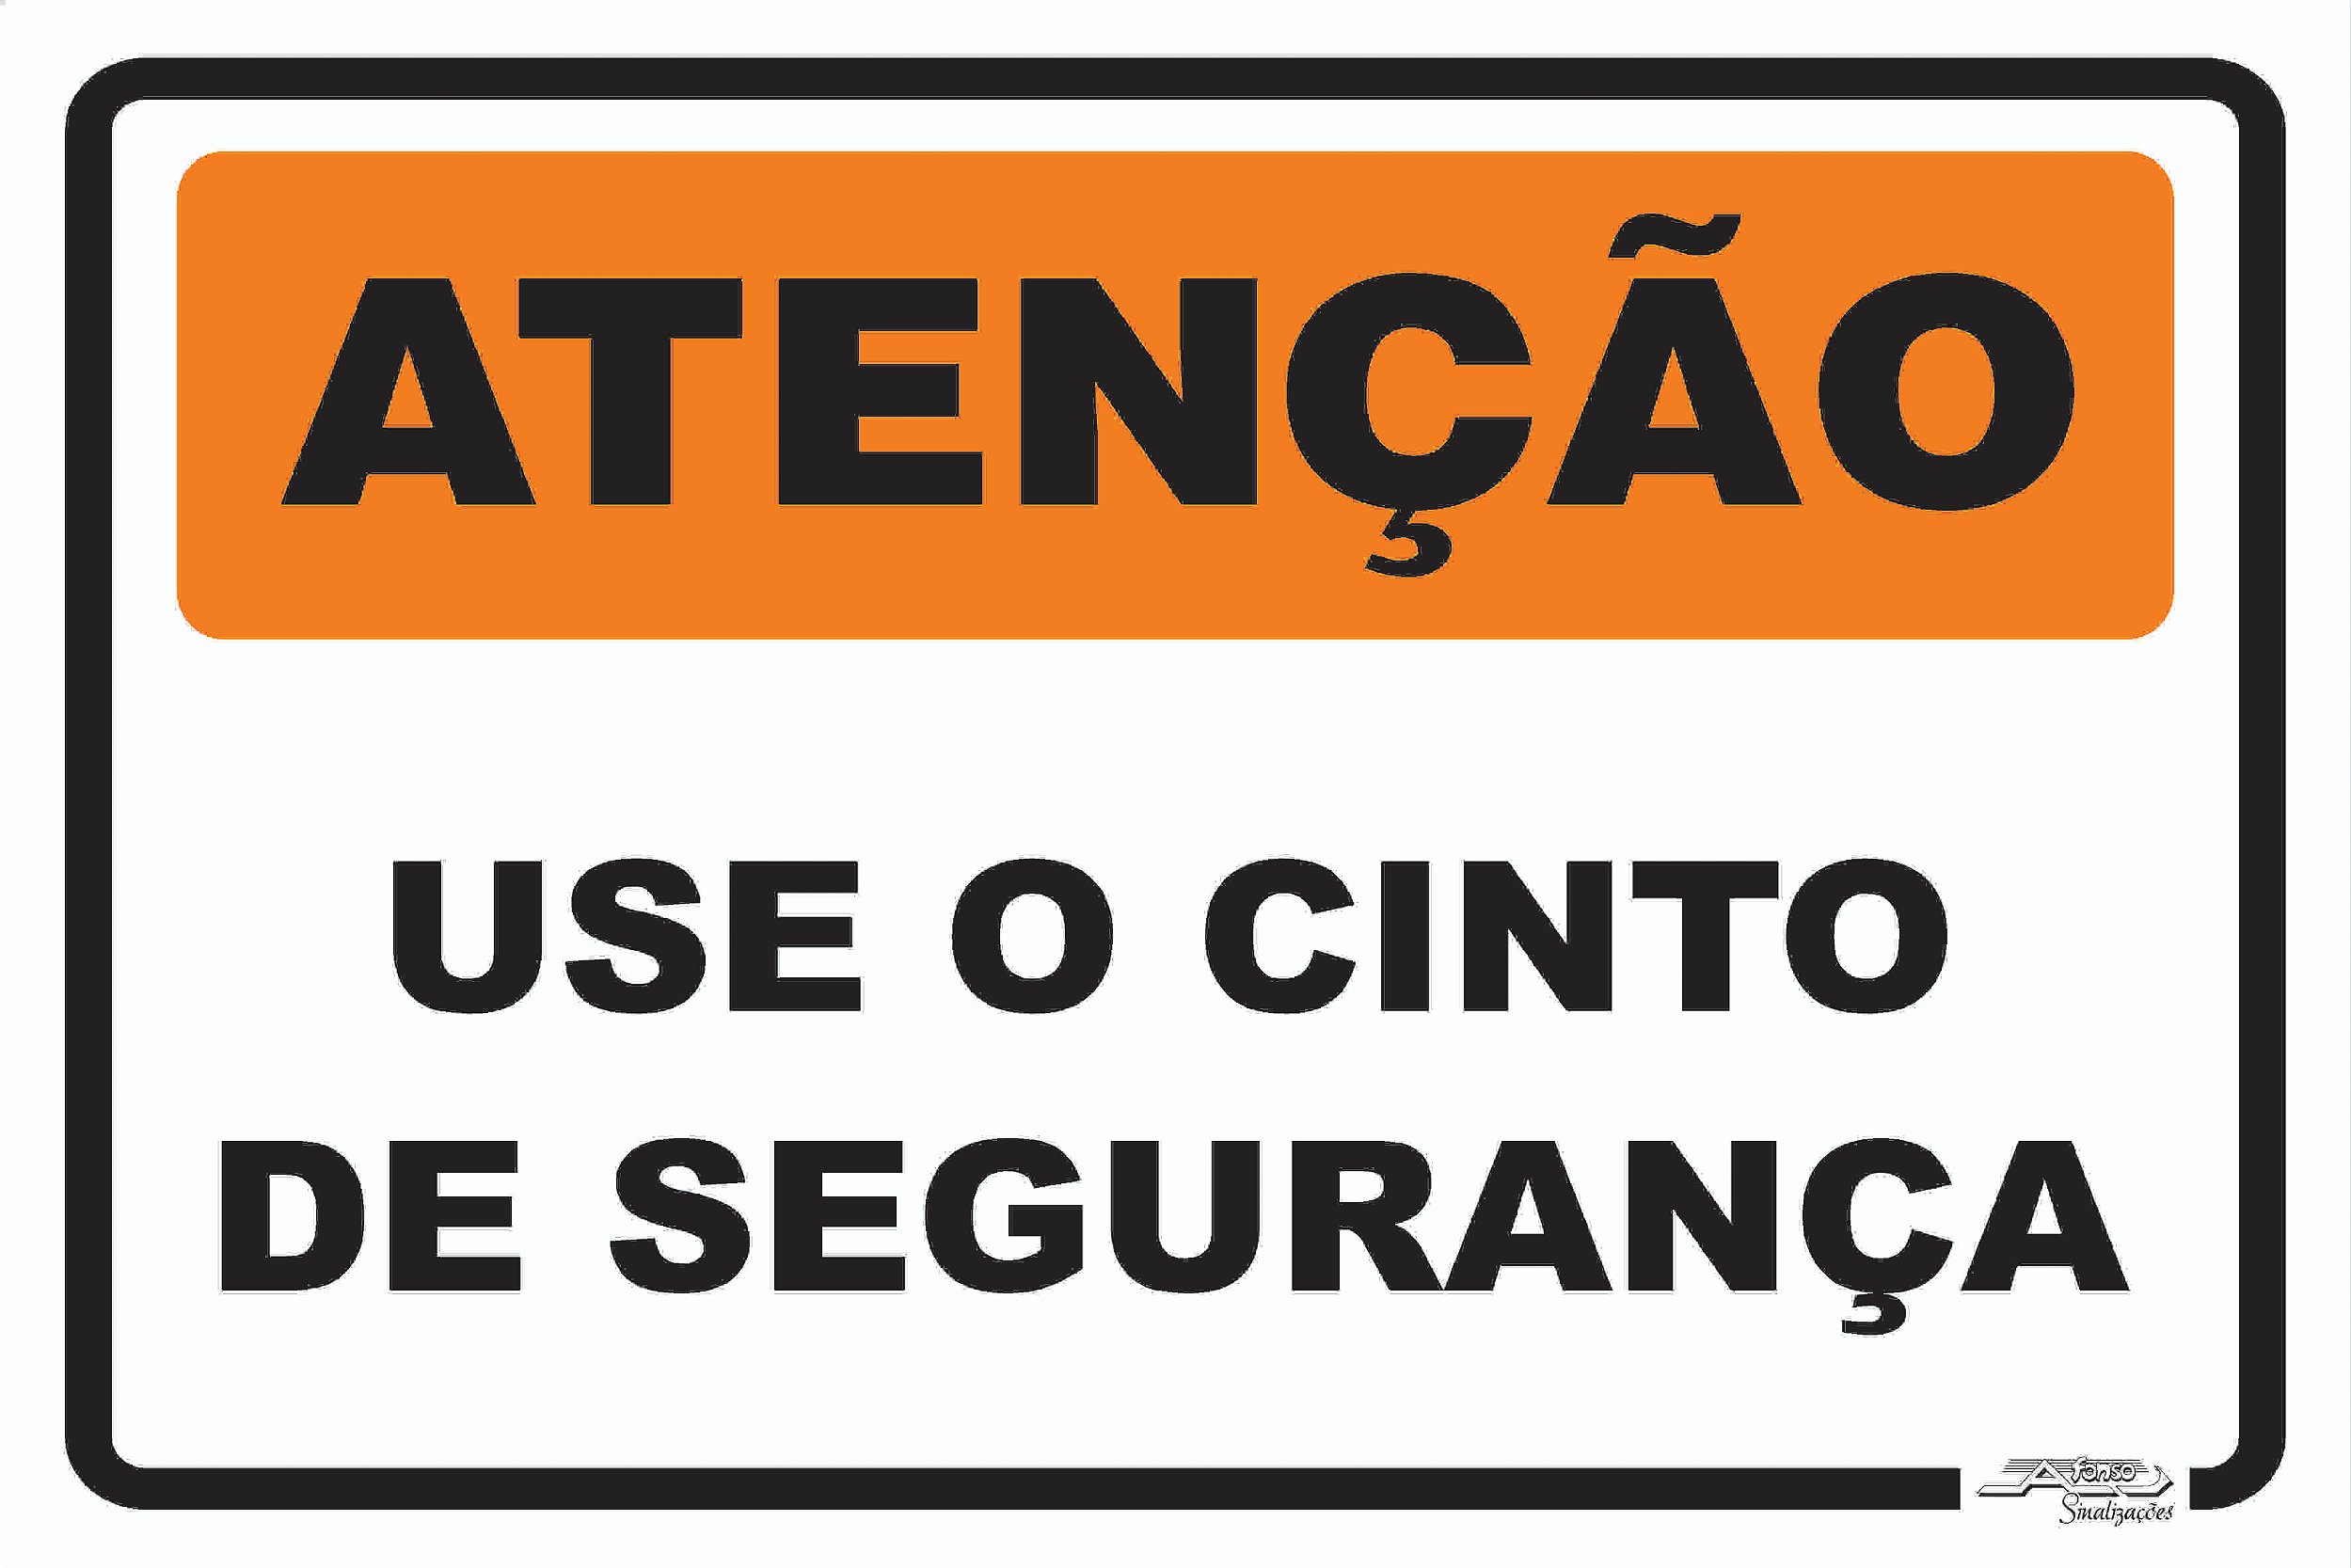 Placa Atenção Use o Cinto de Segurança - Afonso Sinalizações